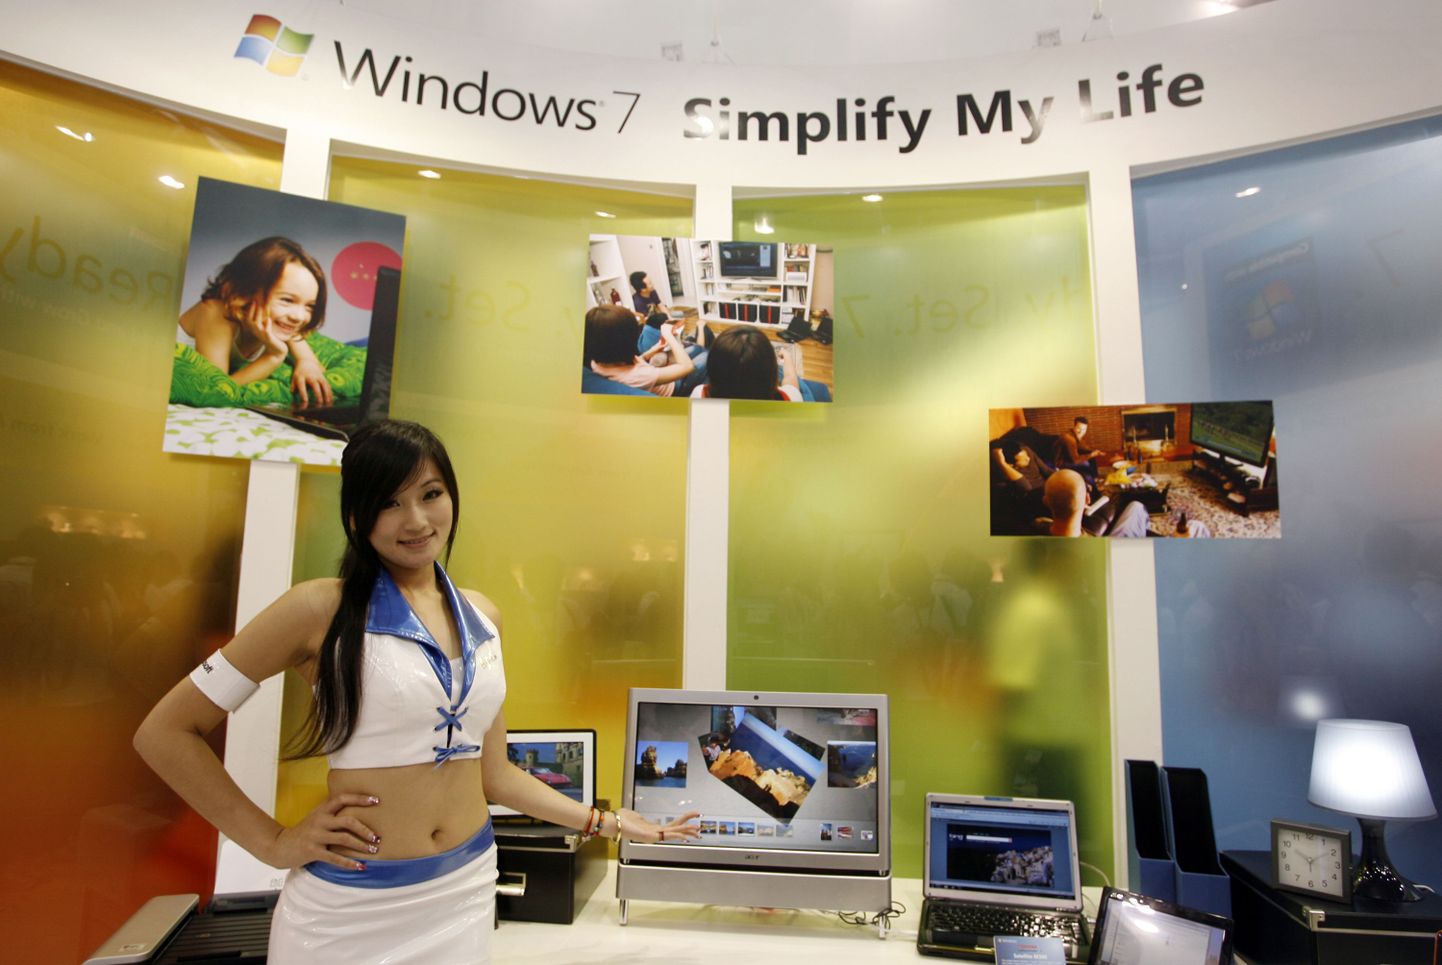 Modell poseerib arvutiga, millele on installeeritud Windows 7 operatsioonisüsteem.